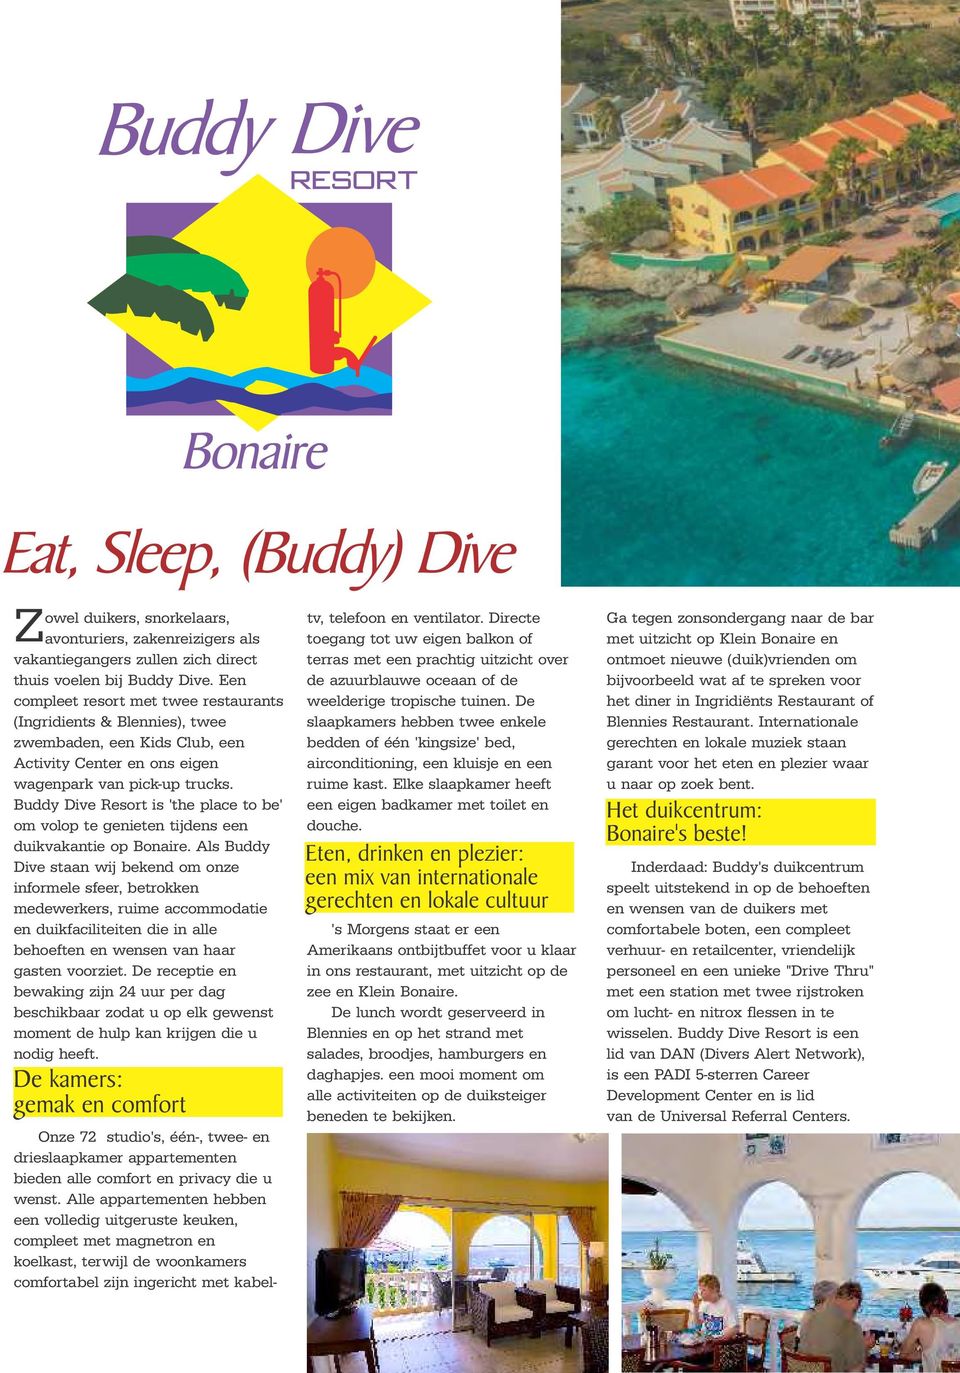 Buddy Dive Resort is 'the place to be' om volop te genieten tijdens een duikvakantie op Bonaire.